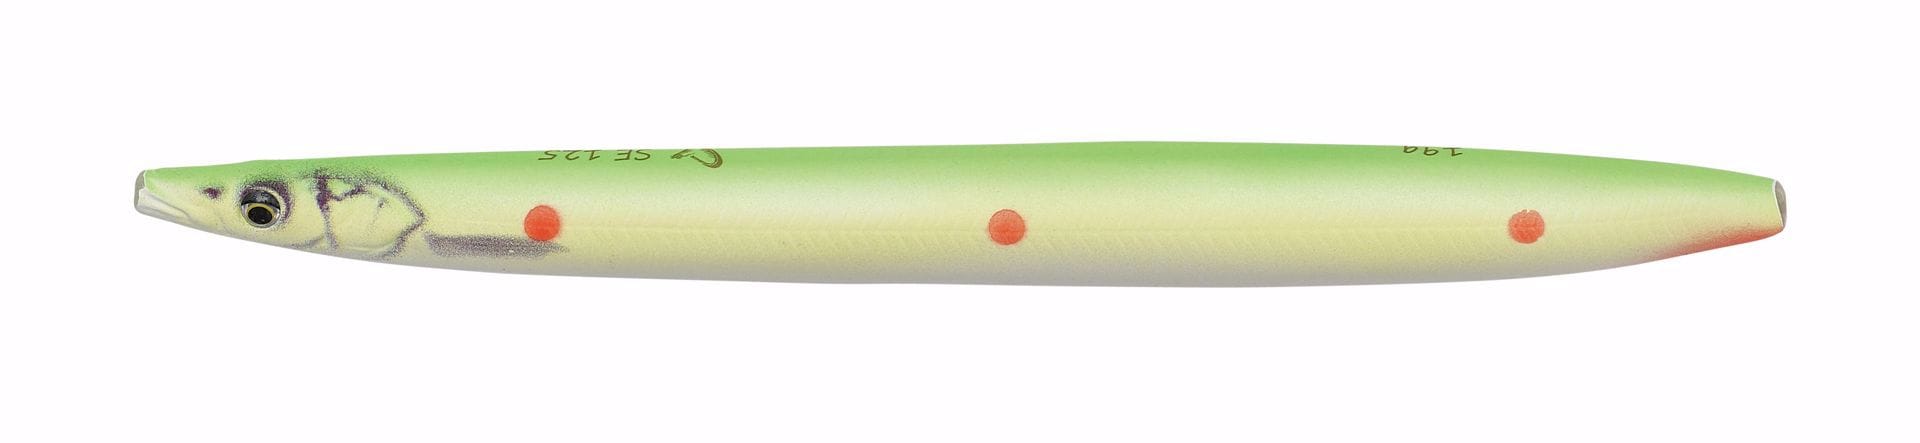 Savage Gear Line Thru Sandeel 12,5cm 19g Sinking Fluo green Red Dots